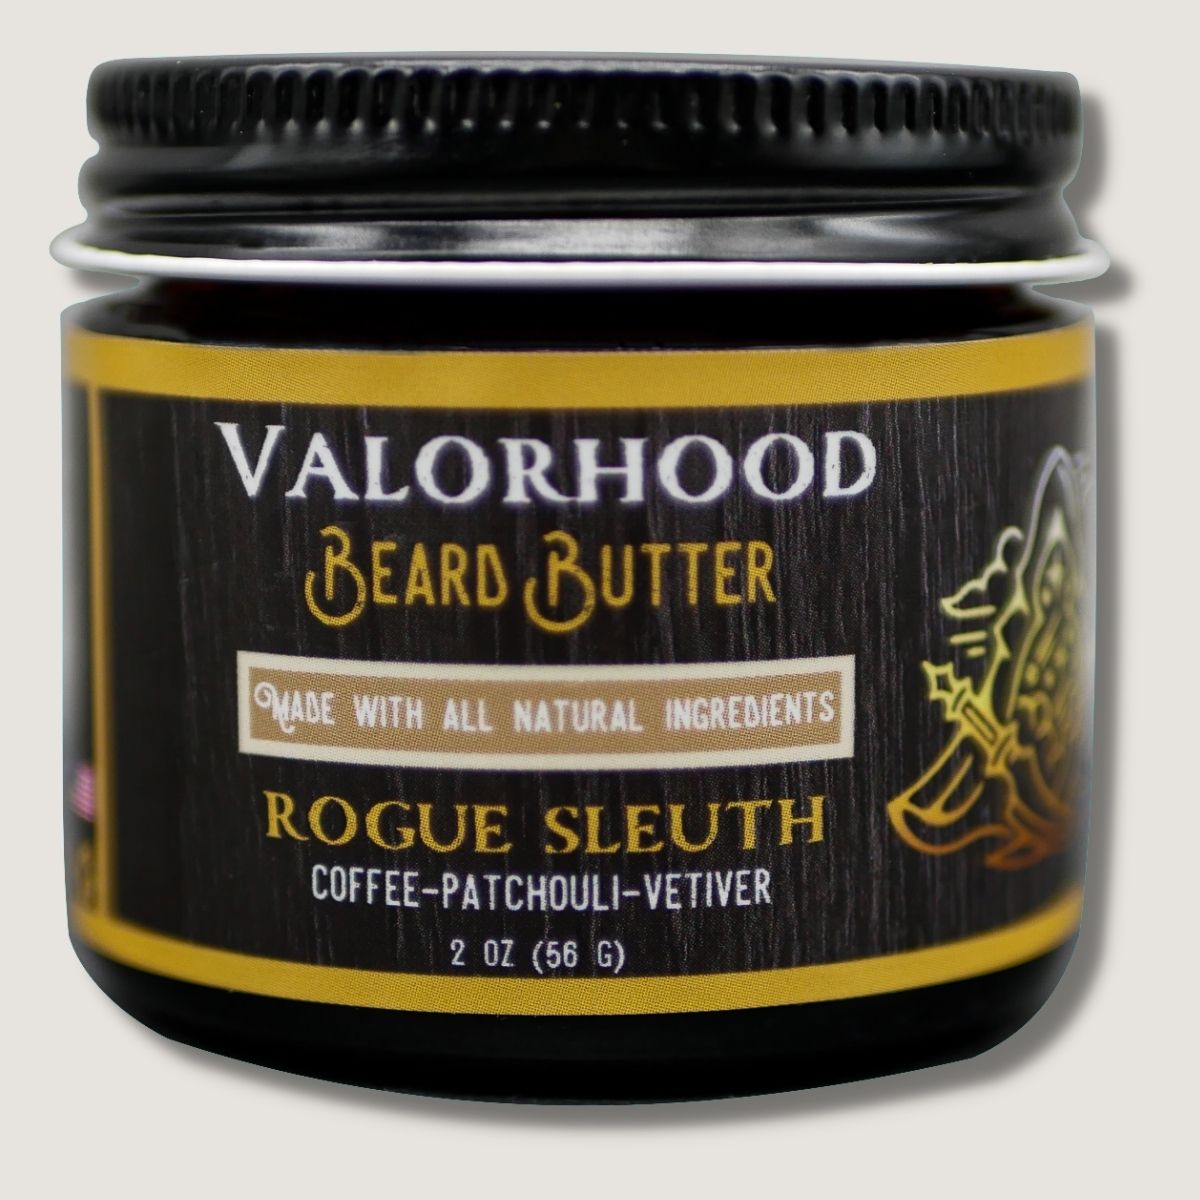 Rogue Sleuth Beard Butter